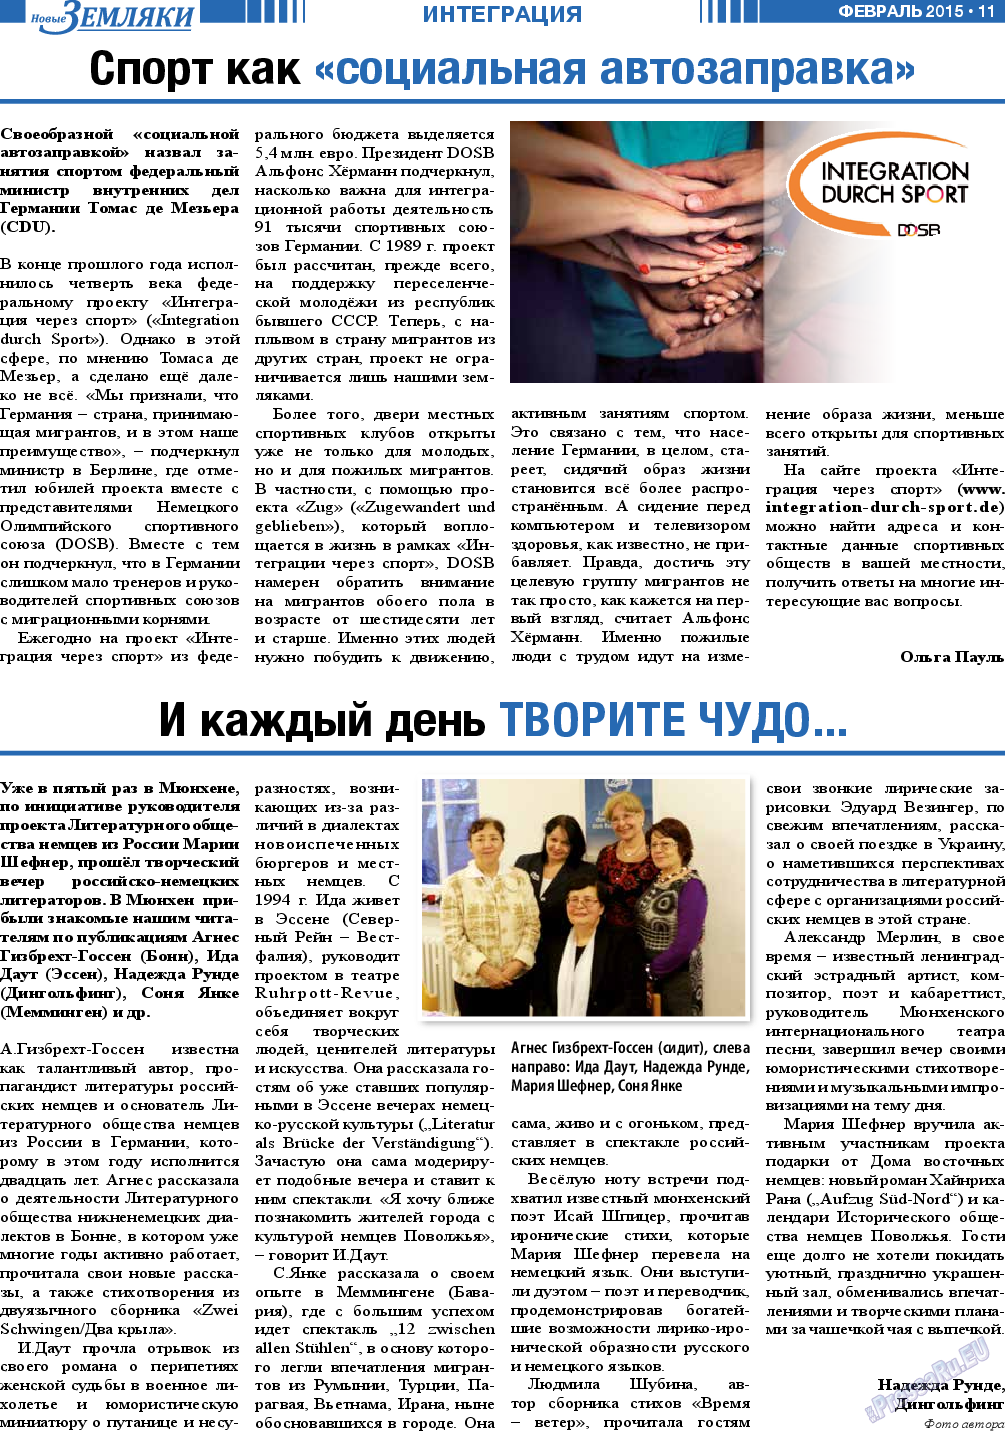 Новые Земляки, газета. 2015 №2 стр.11